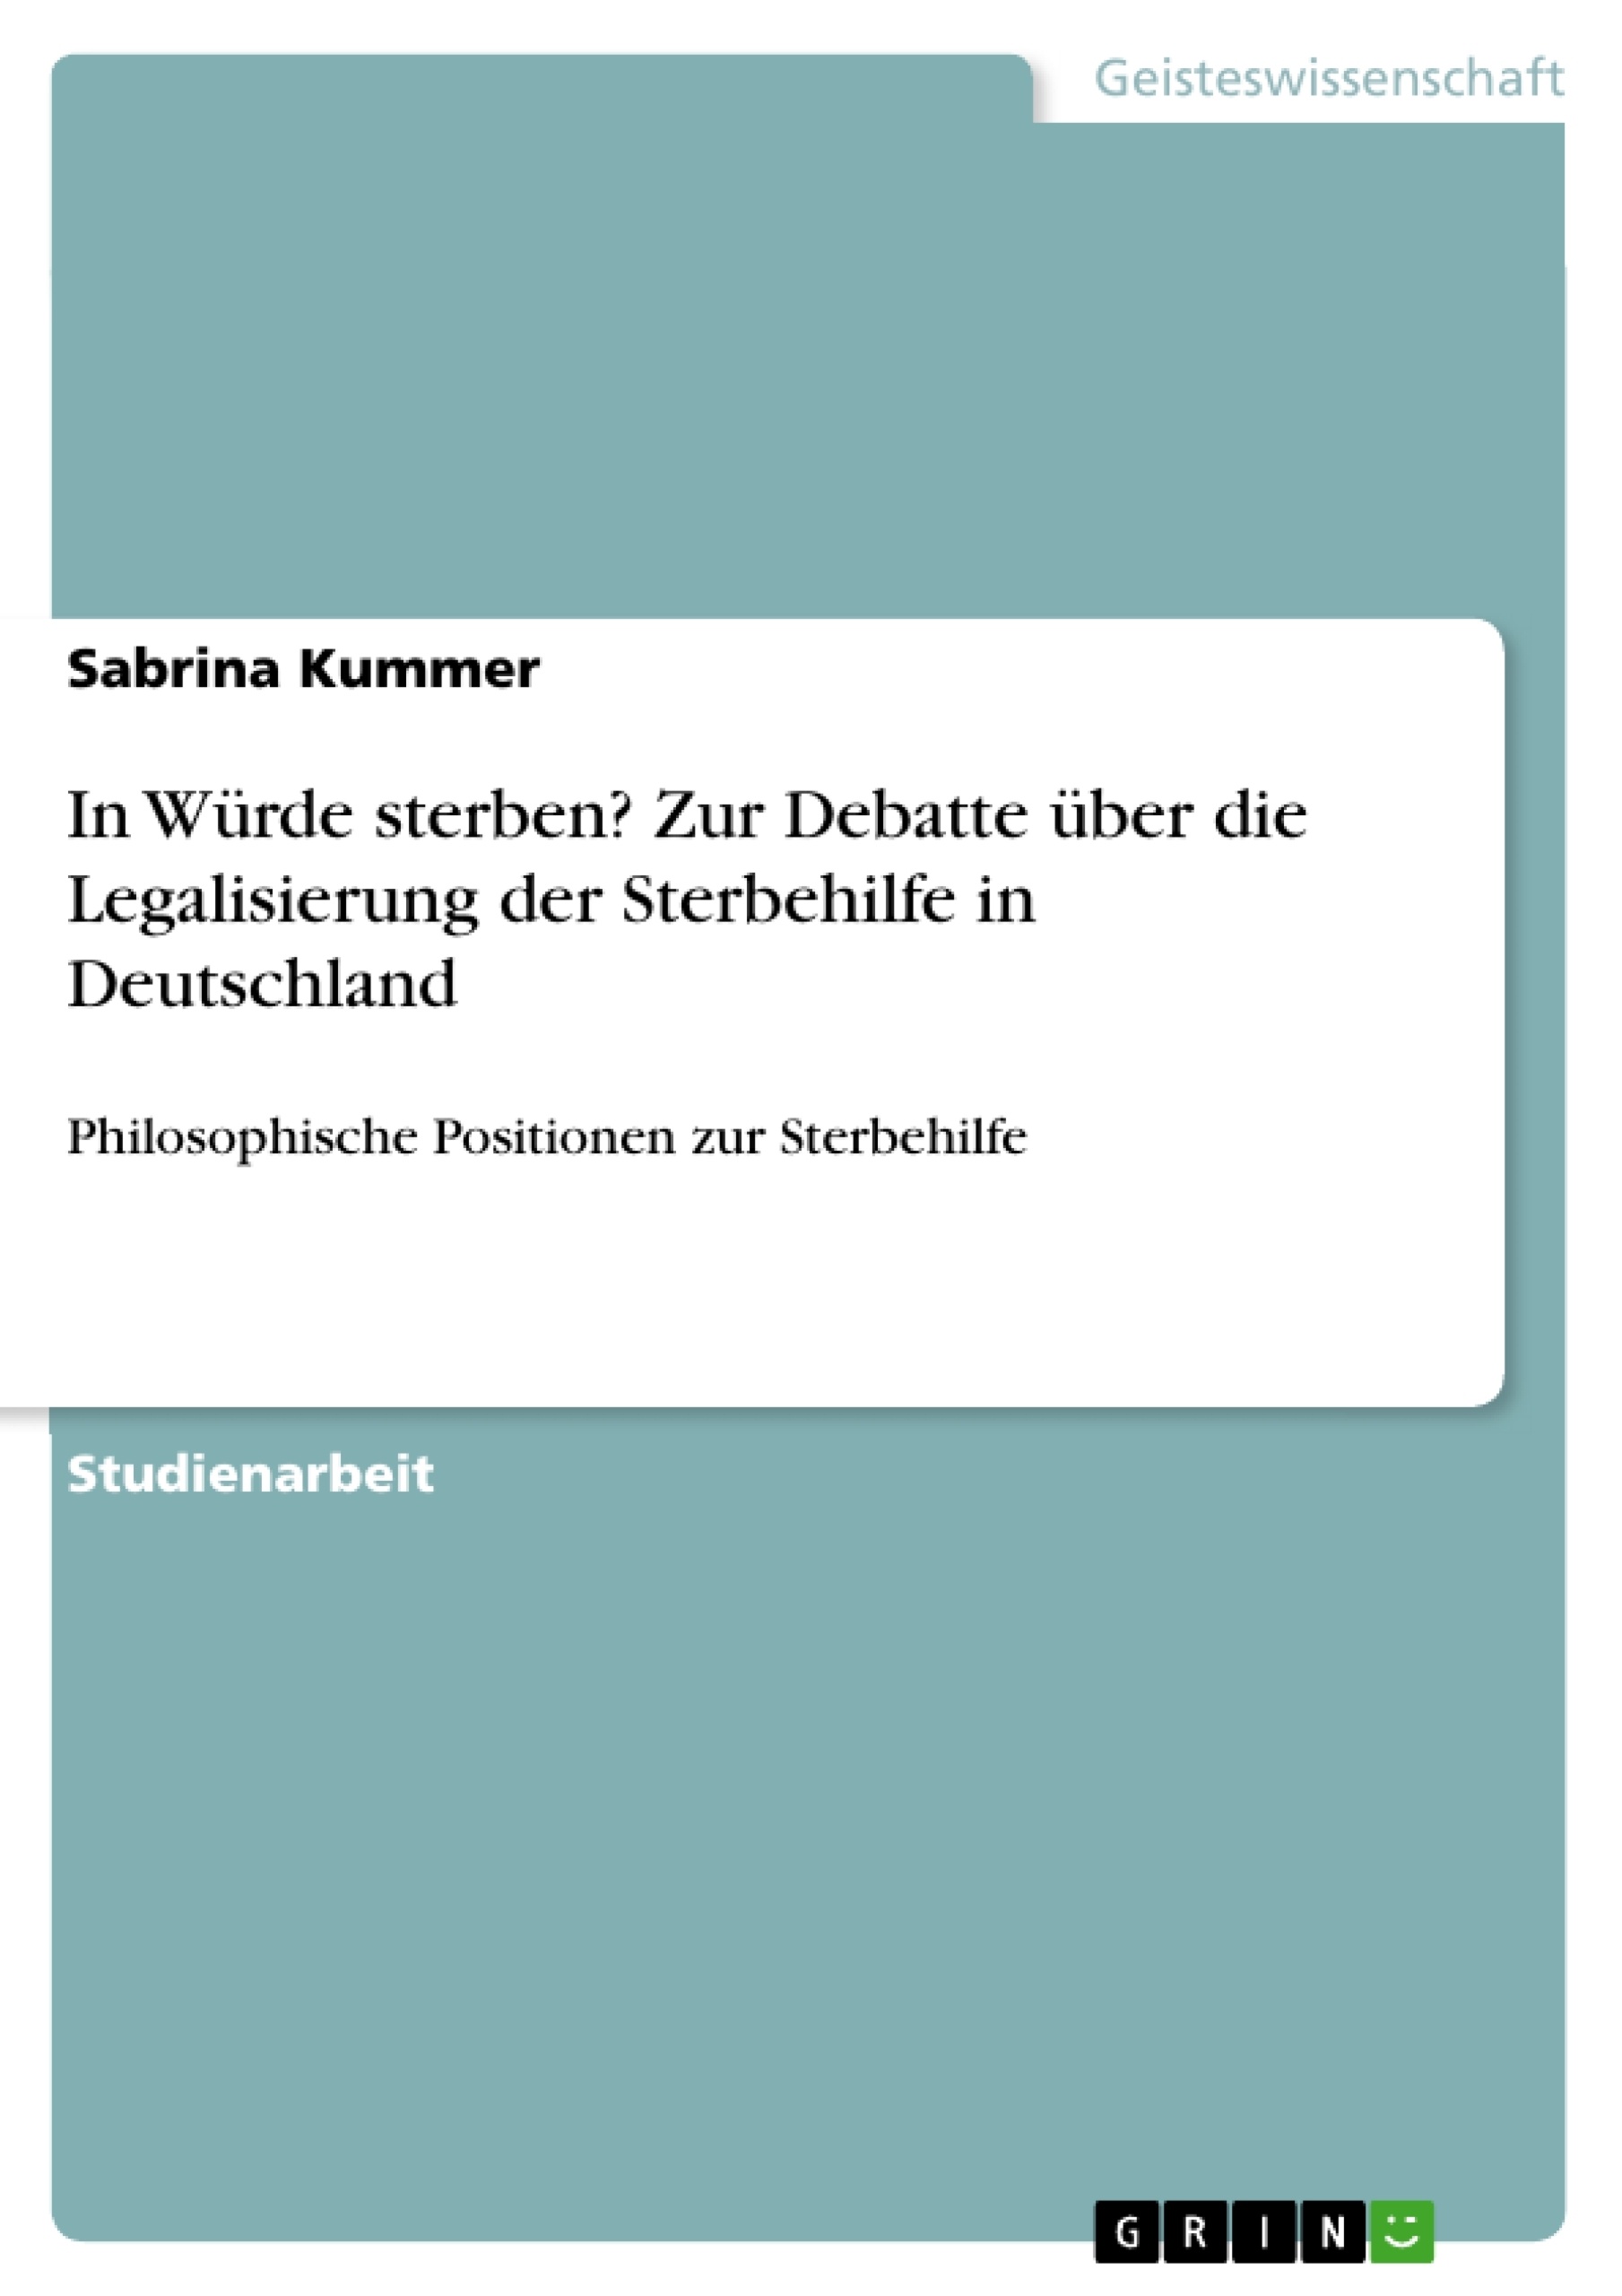 Title: In Würde sterben? Zur Debatte über die Legalisierung der Sterbehilfe in Deutschland